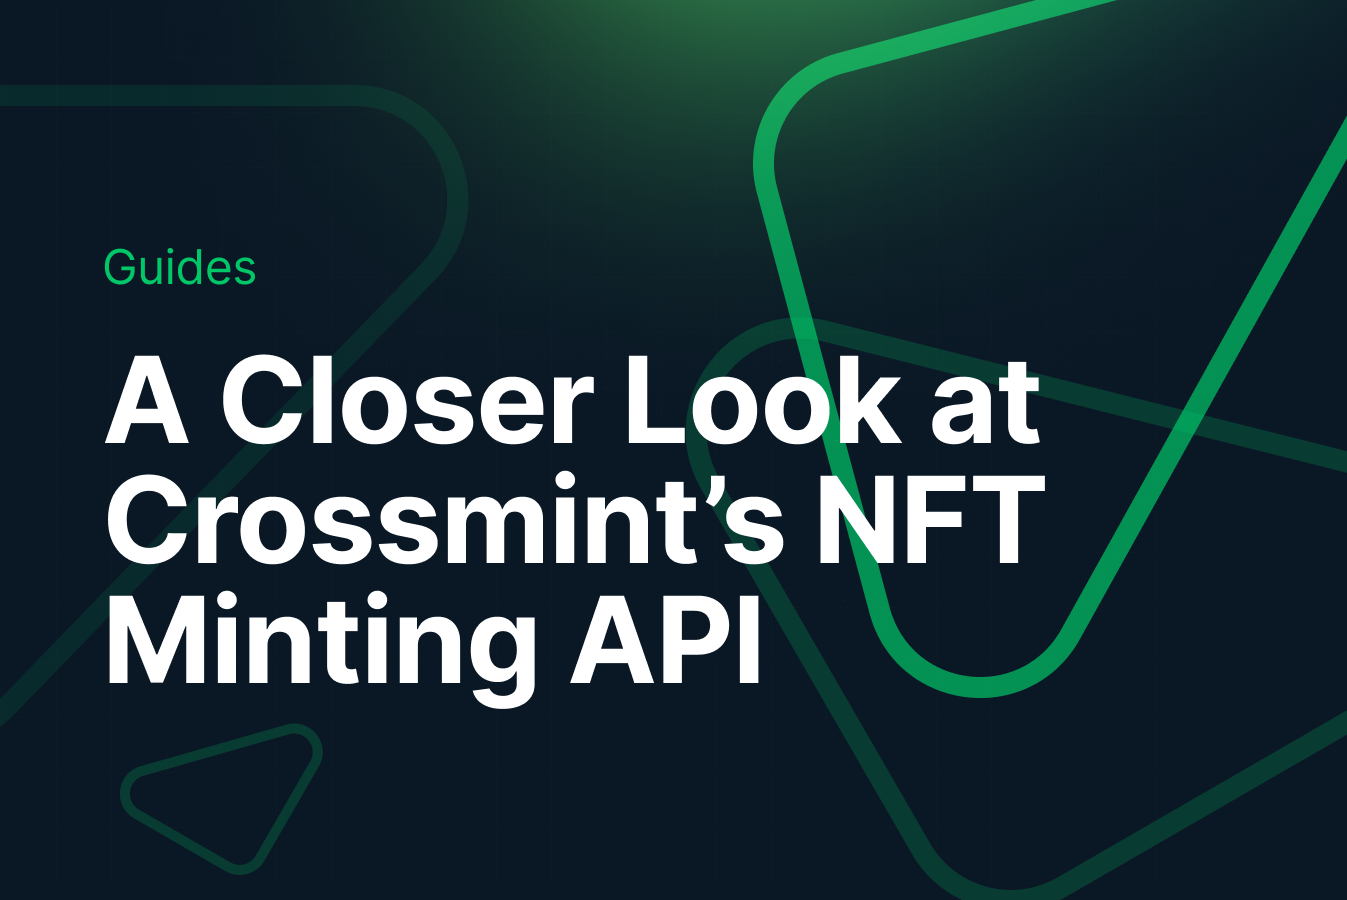 A Closer Look at Crossmint’s NFT Minting API